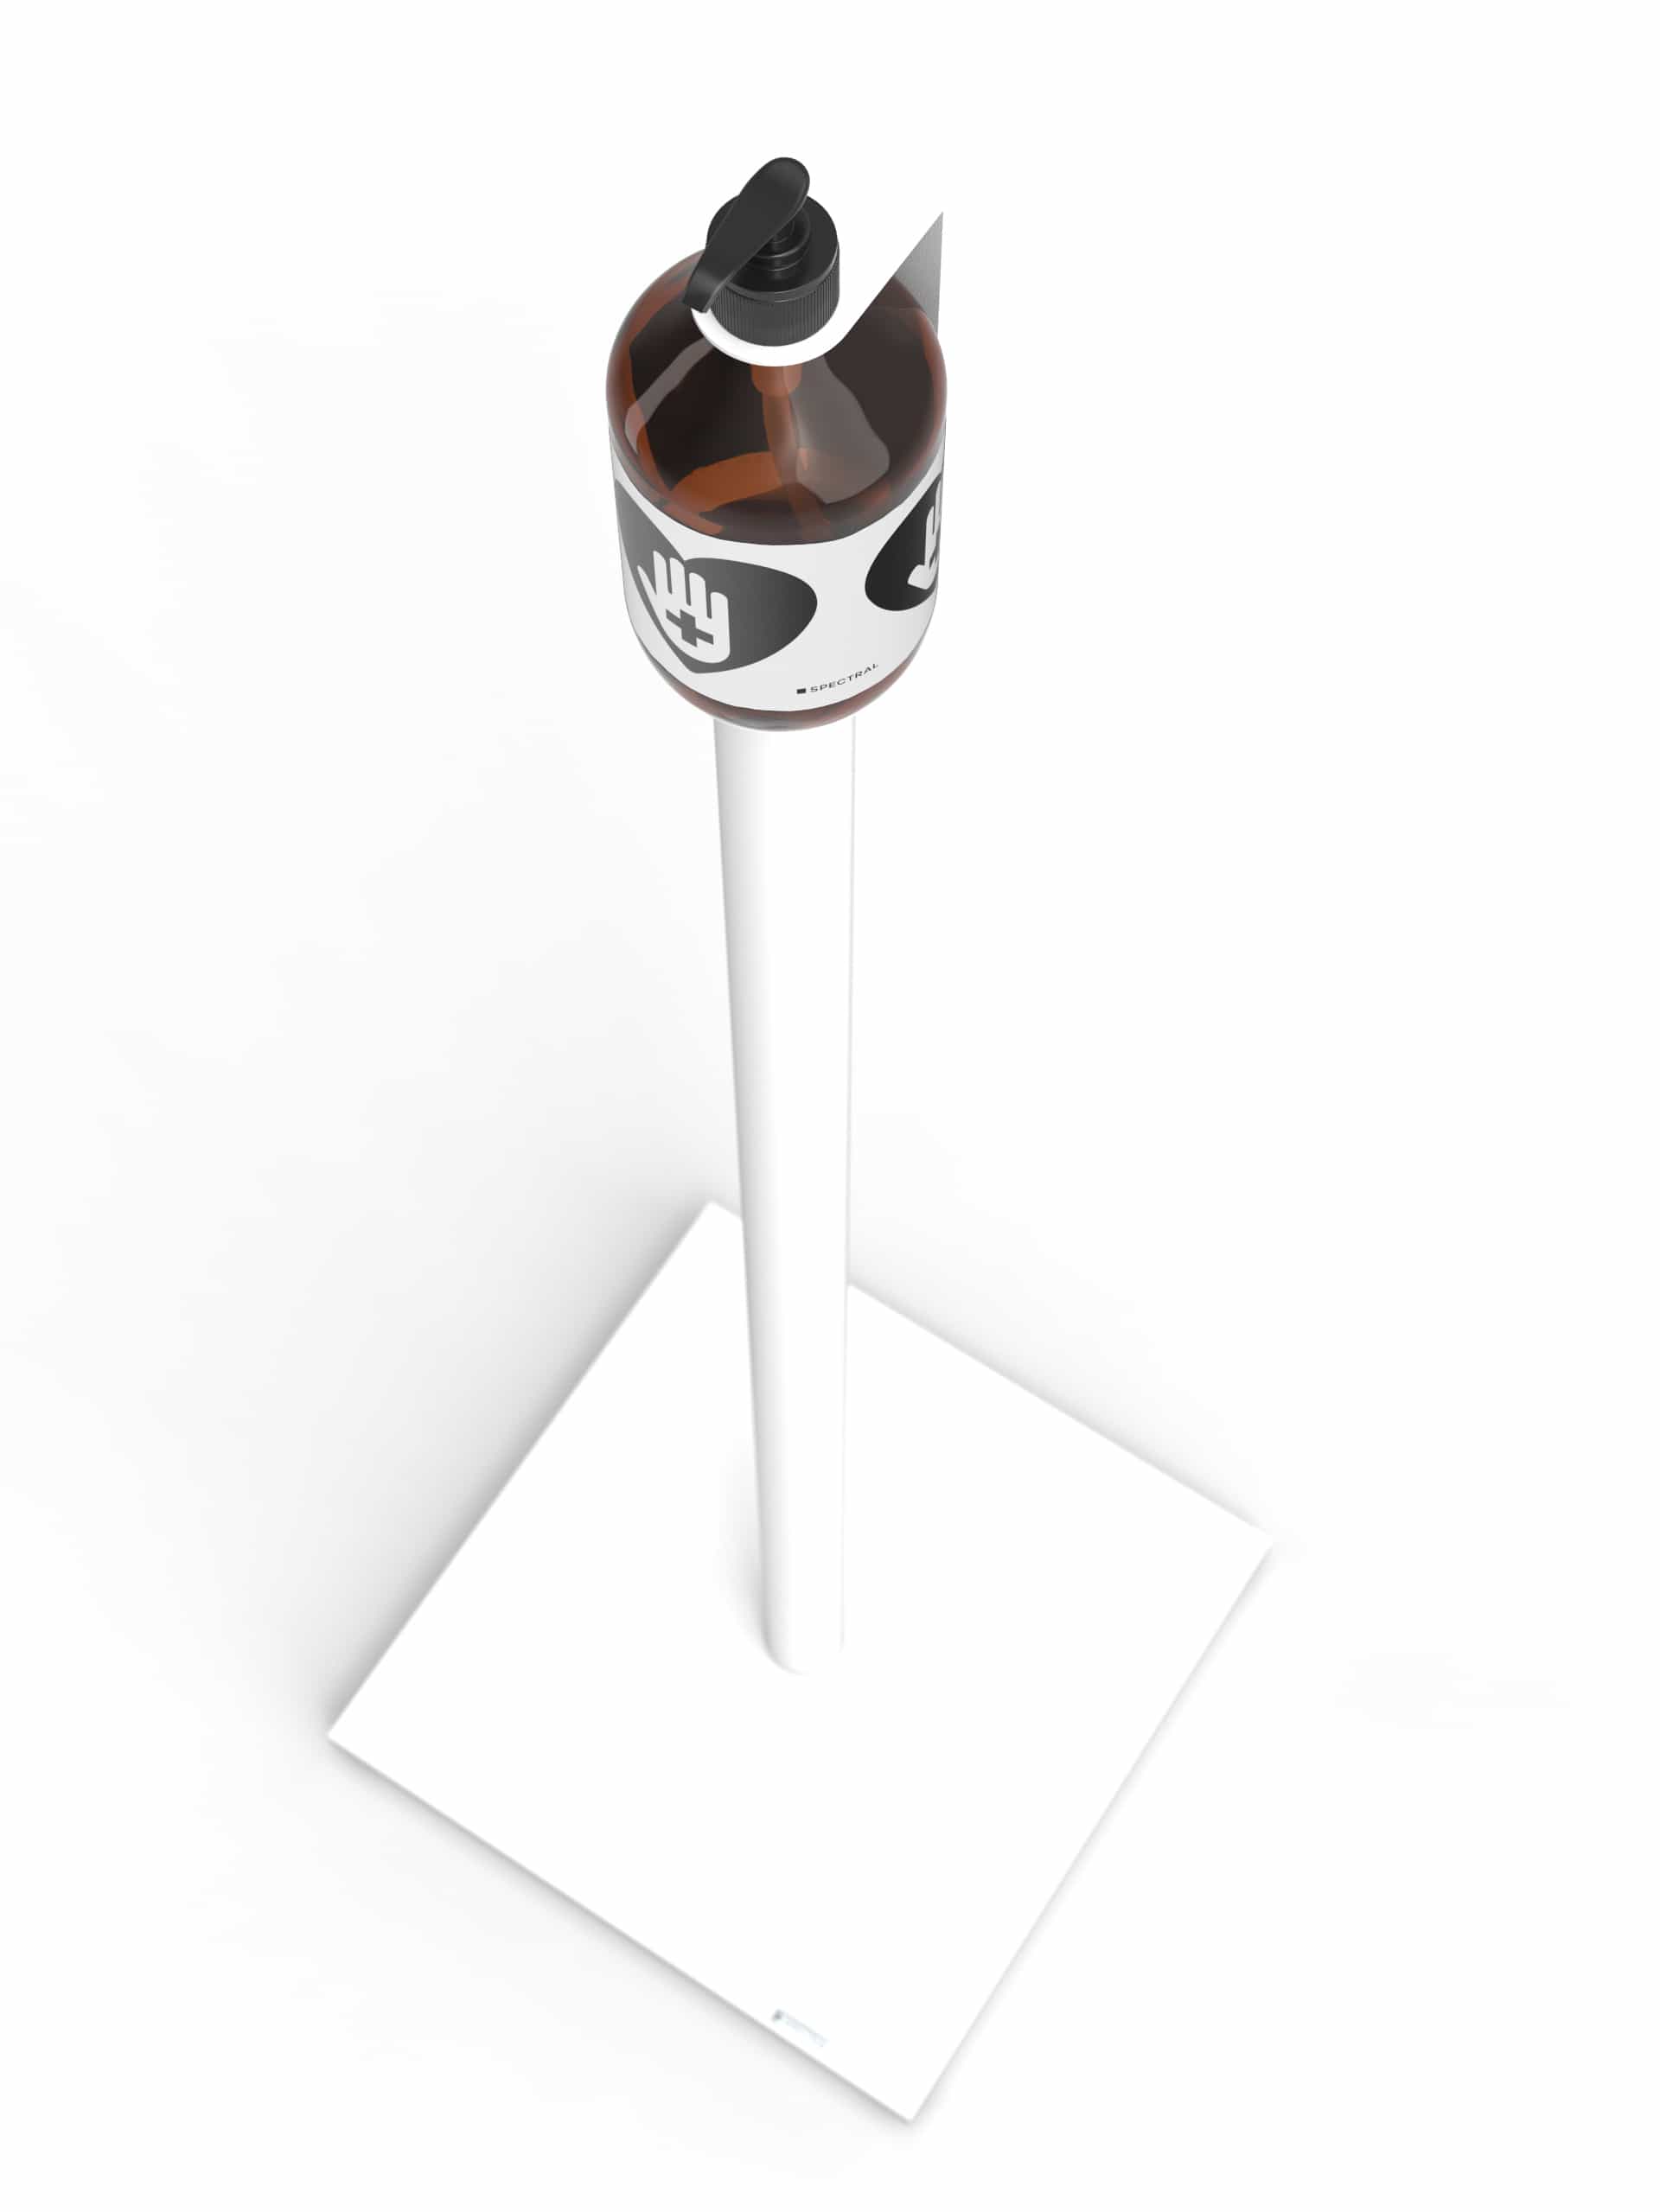 DX Stand DX202 mit stabilem Standfuss und edler Leerflasche aus Glas inklusive Pumpkopf